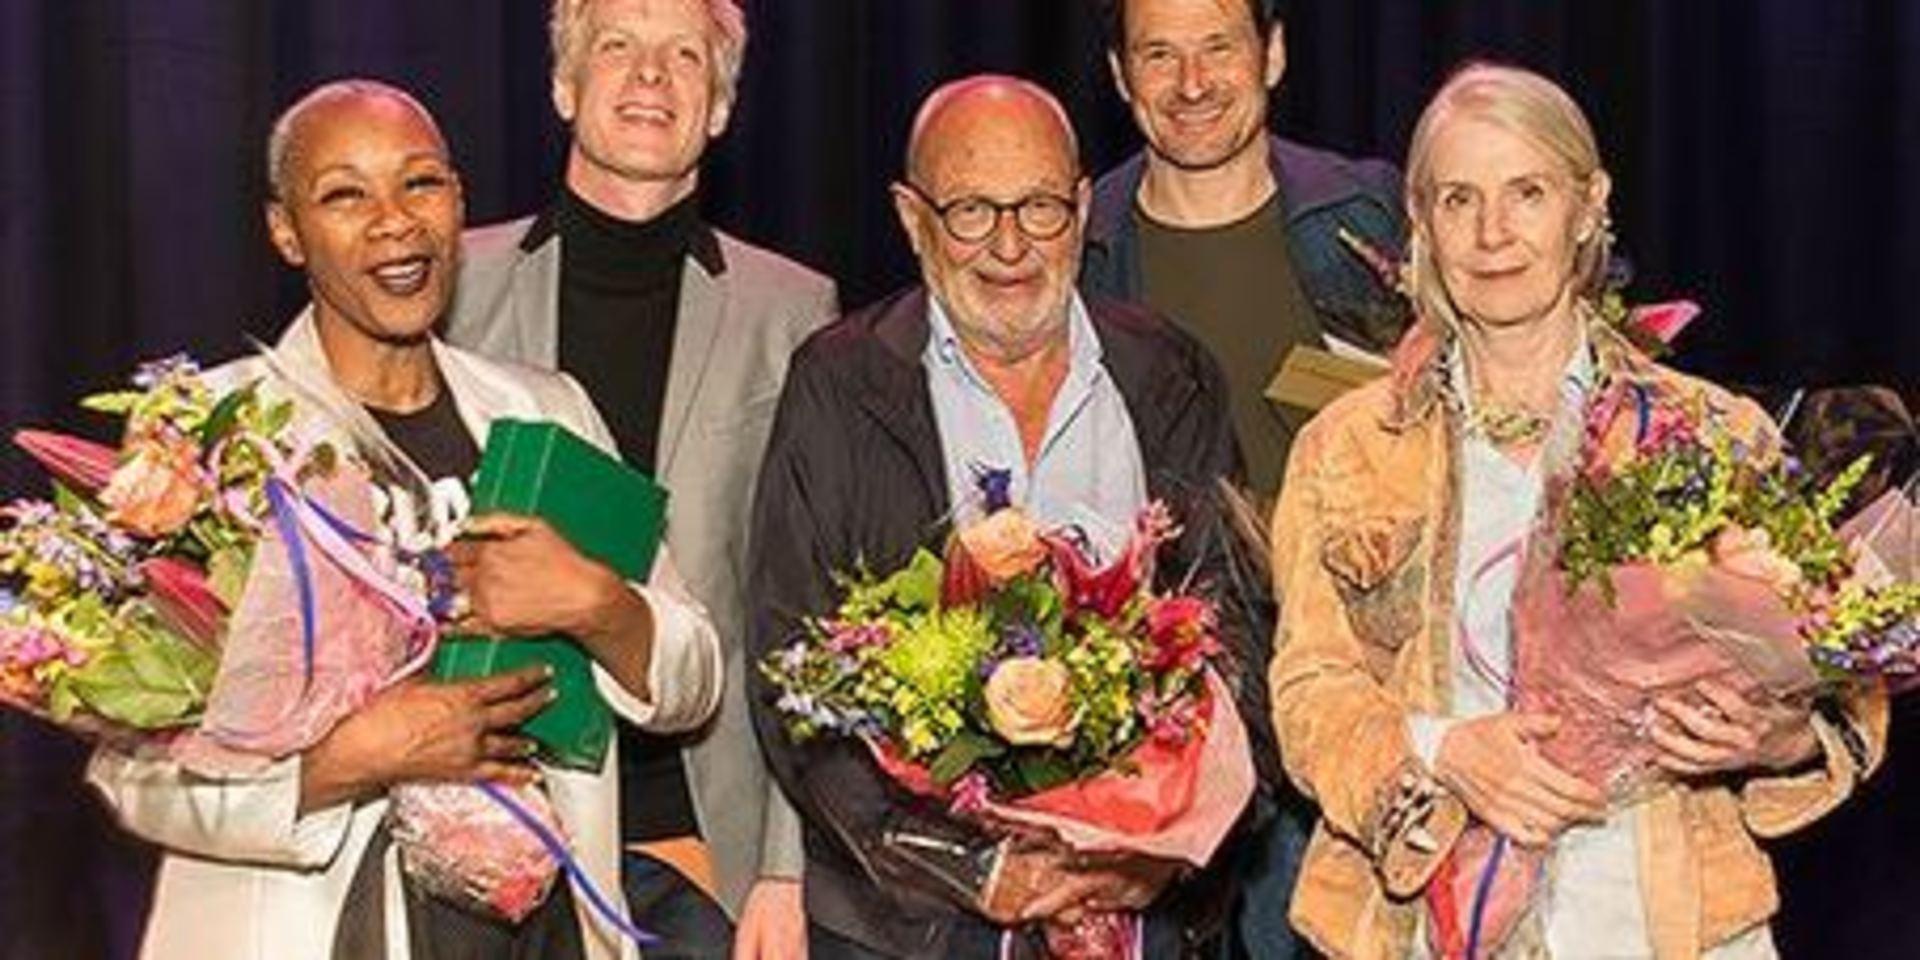 Fem konstnärer prisas. Från vänster: Josette Bushell-Mingo, Martin Fröst, Stefan Jarl, Örjan Andersson och Cecilia Edefalk.